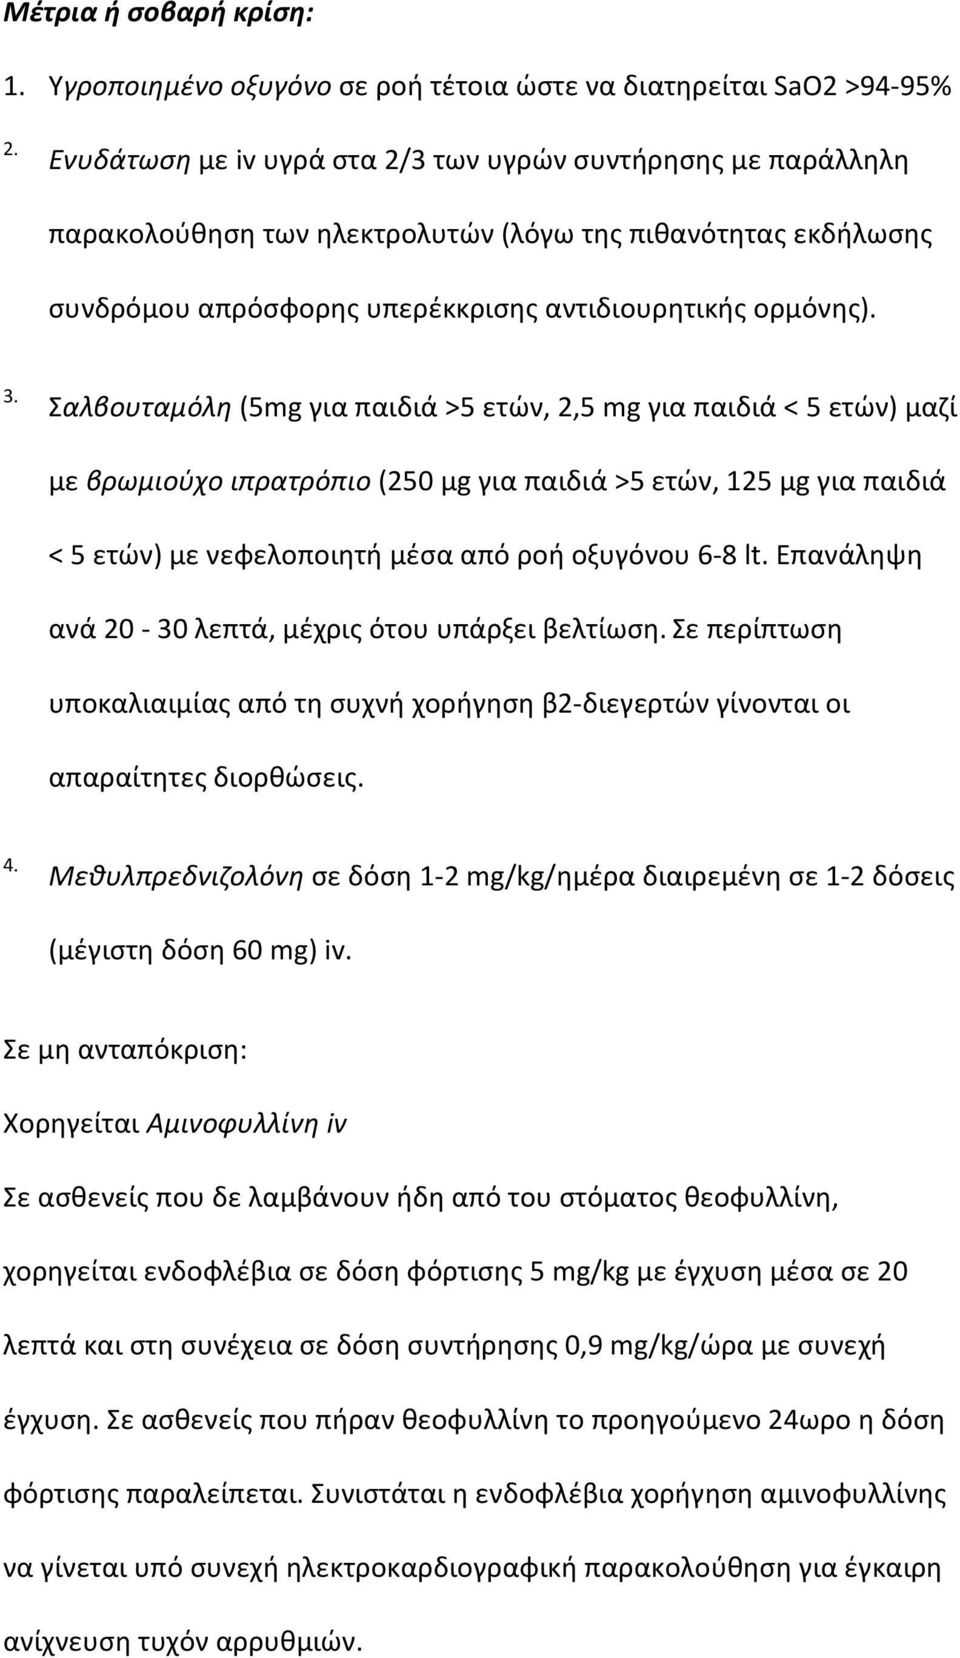 Σαλβουταμόλη (5mg για παιδιά >5 ετών, 2,5 mg για παιδιά < 5 ετών) μαζί με βρωμιούχο ιπρατρόπιο (250 μg για παιδιά >5 ετών, 125 μg για παιδιά < 5 ετών) με νεφελοποιητή μέσα από ροή οξυγόνου 6-8 lt.